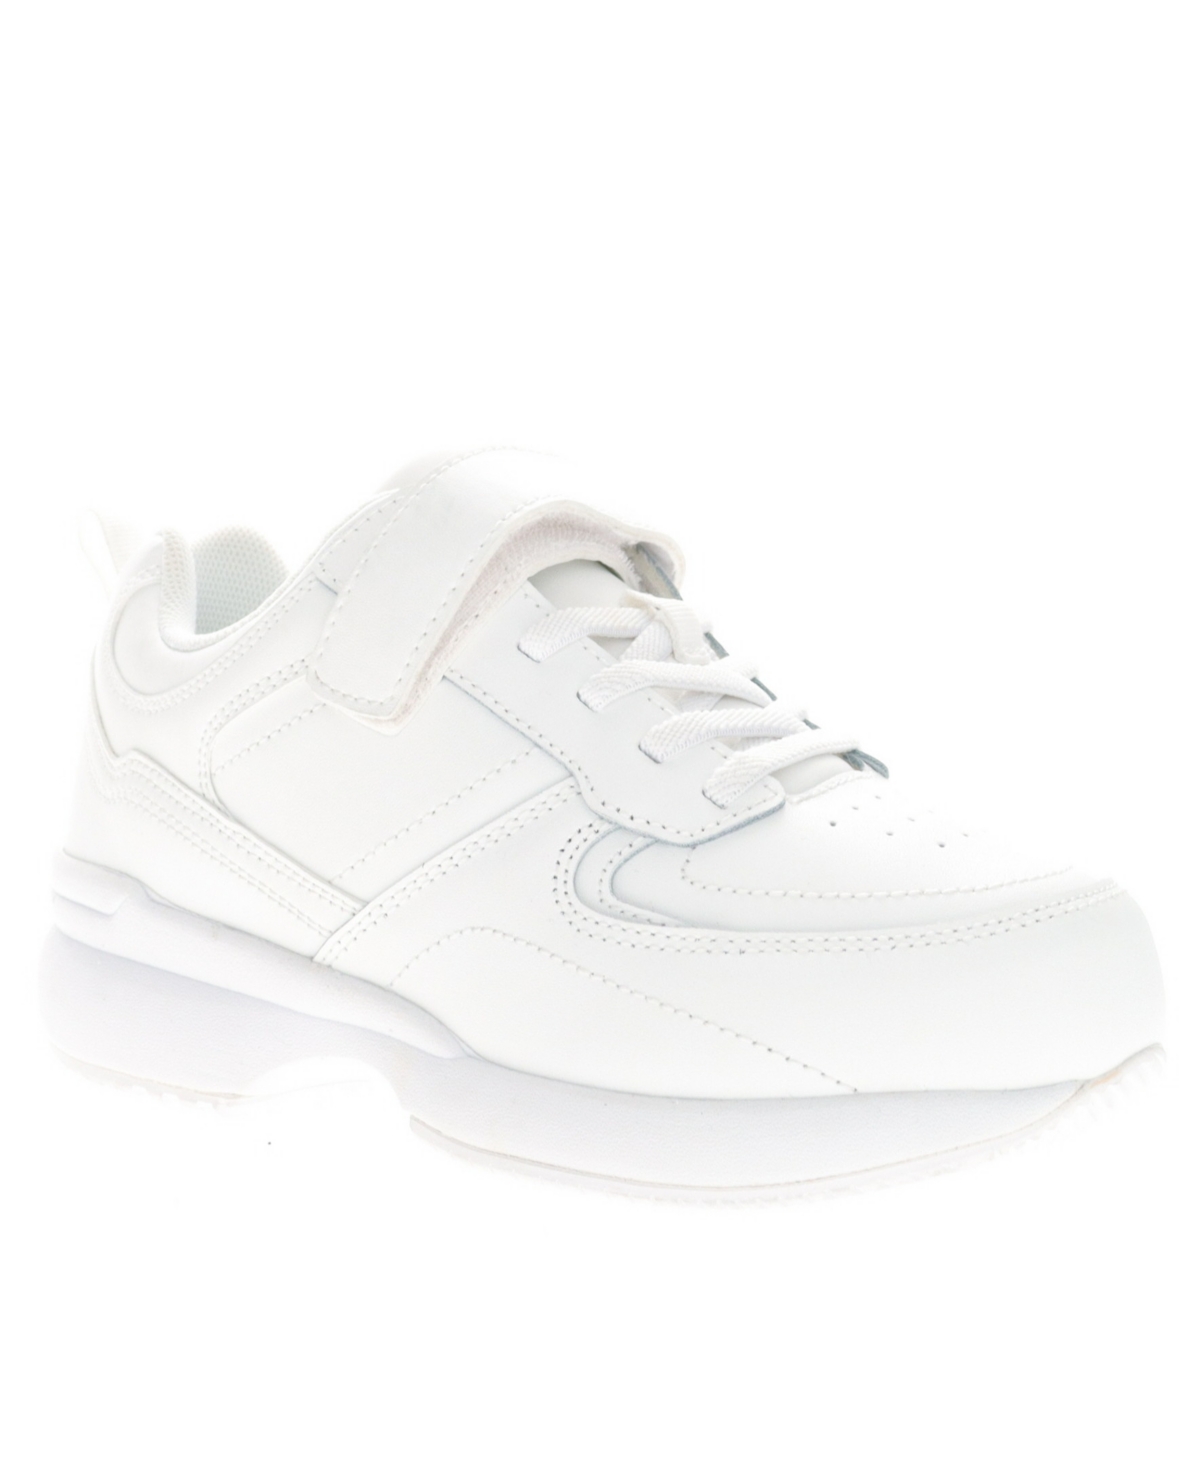 Women's Lifewalker Flex Sneakers - White